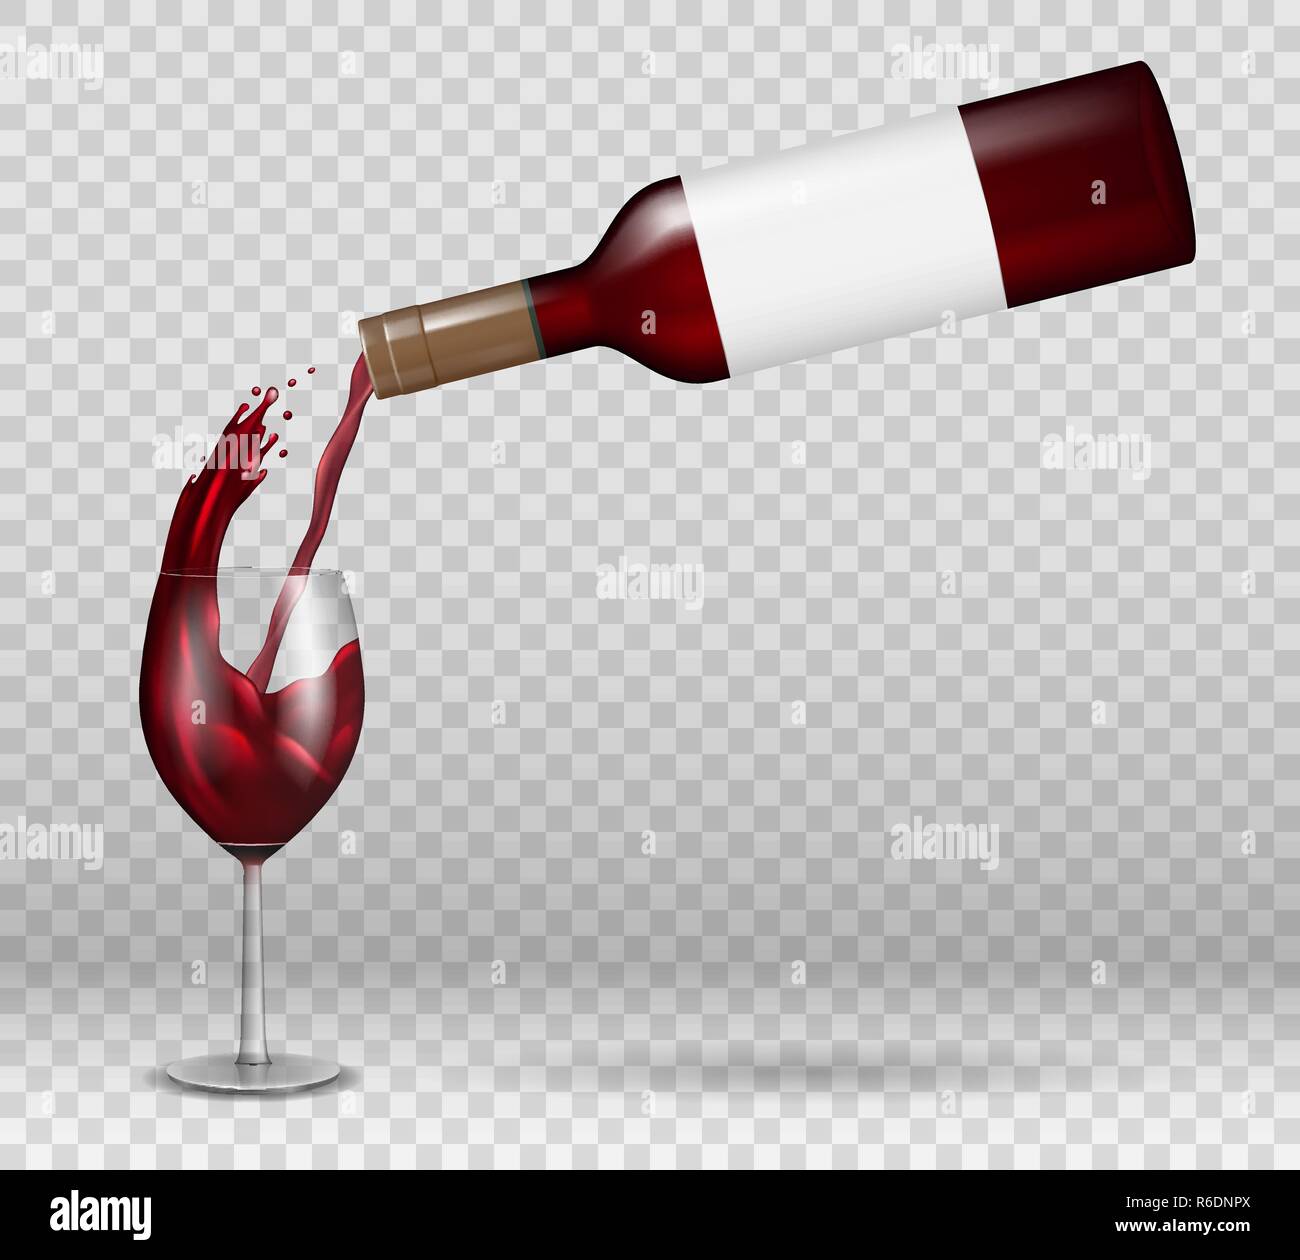 Bottiglia di vino trasparente e mockup di vino con riflesso. Vino rosso liquido versando con spruzzatura in vetro isolato. Bevanda alcolica con gocce Illustrazione Vettoriale